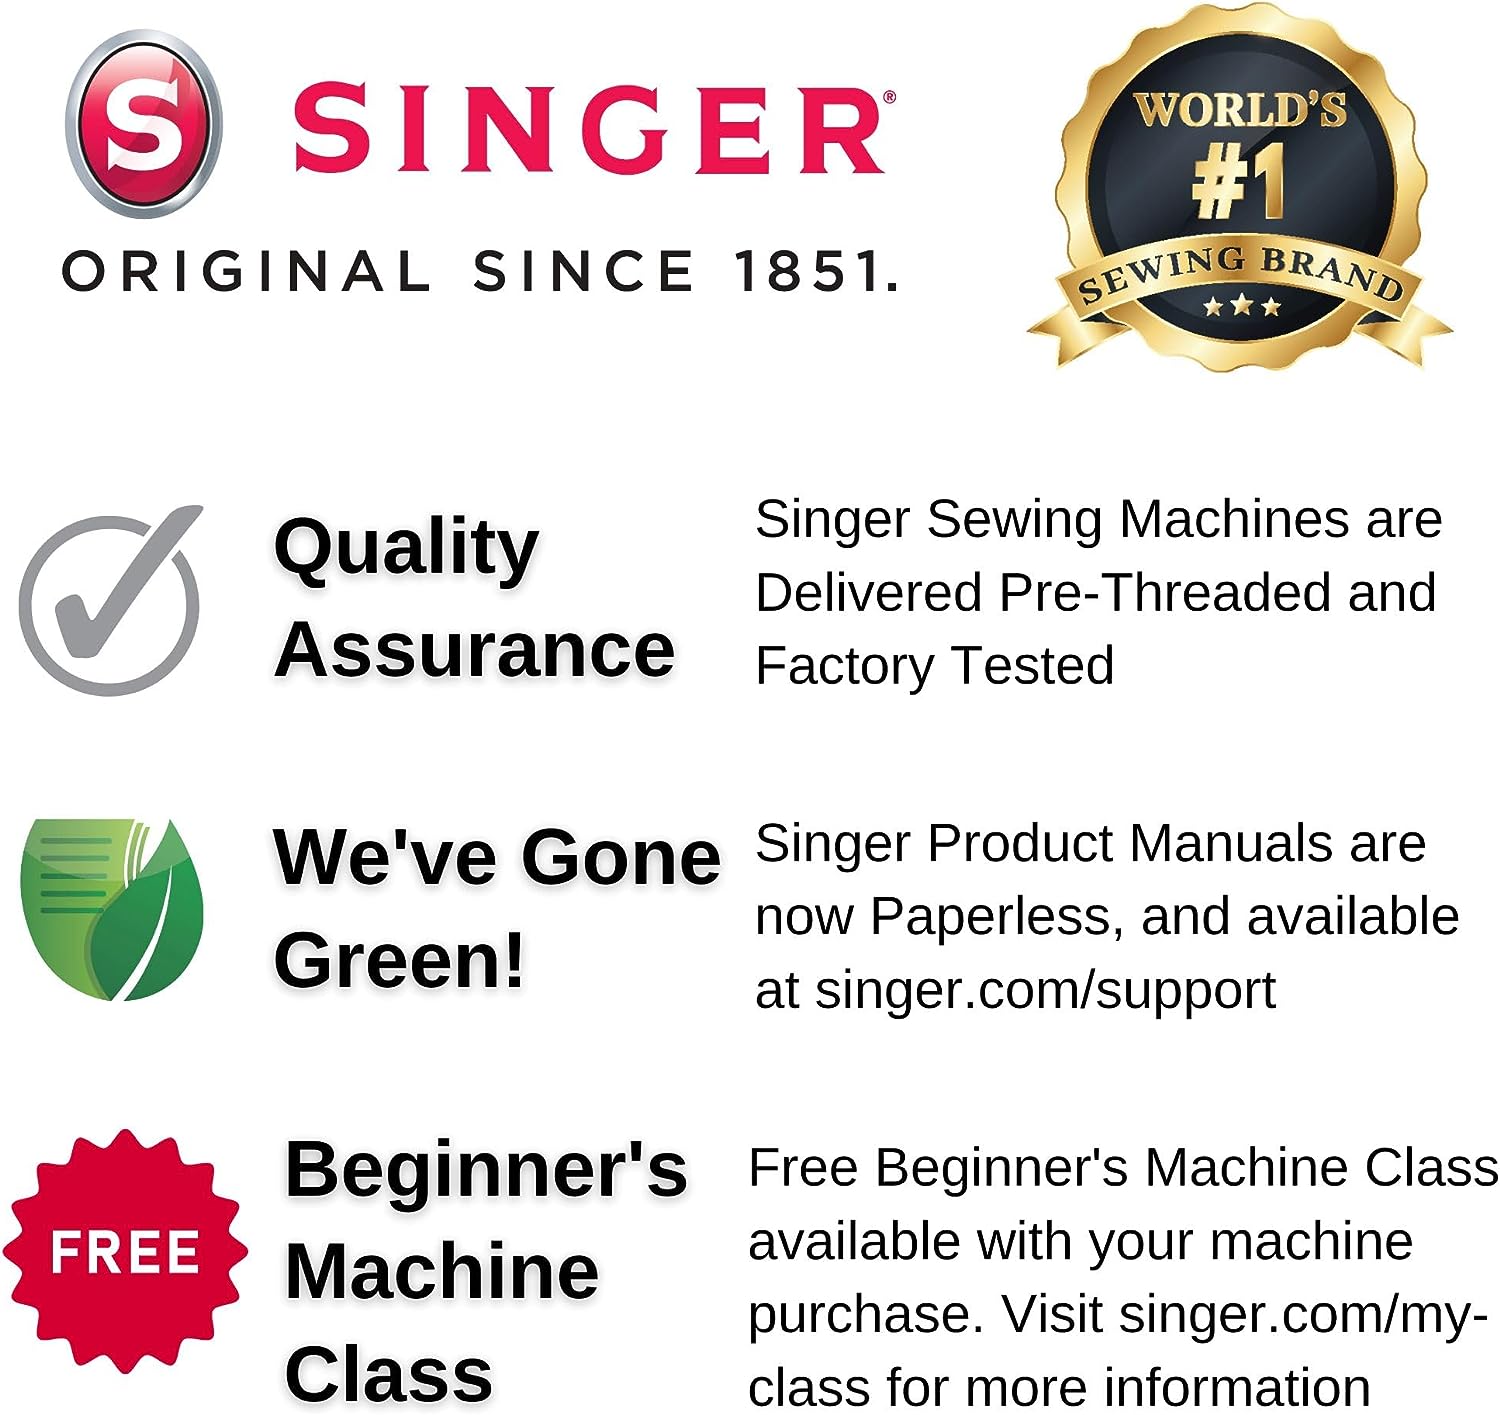 Singer 4423 Heavy Duty Sewing Machine: Versatile, Beginner